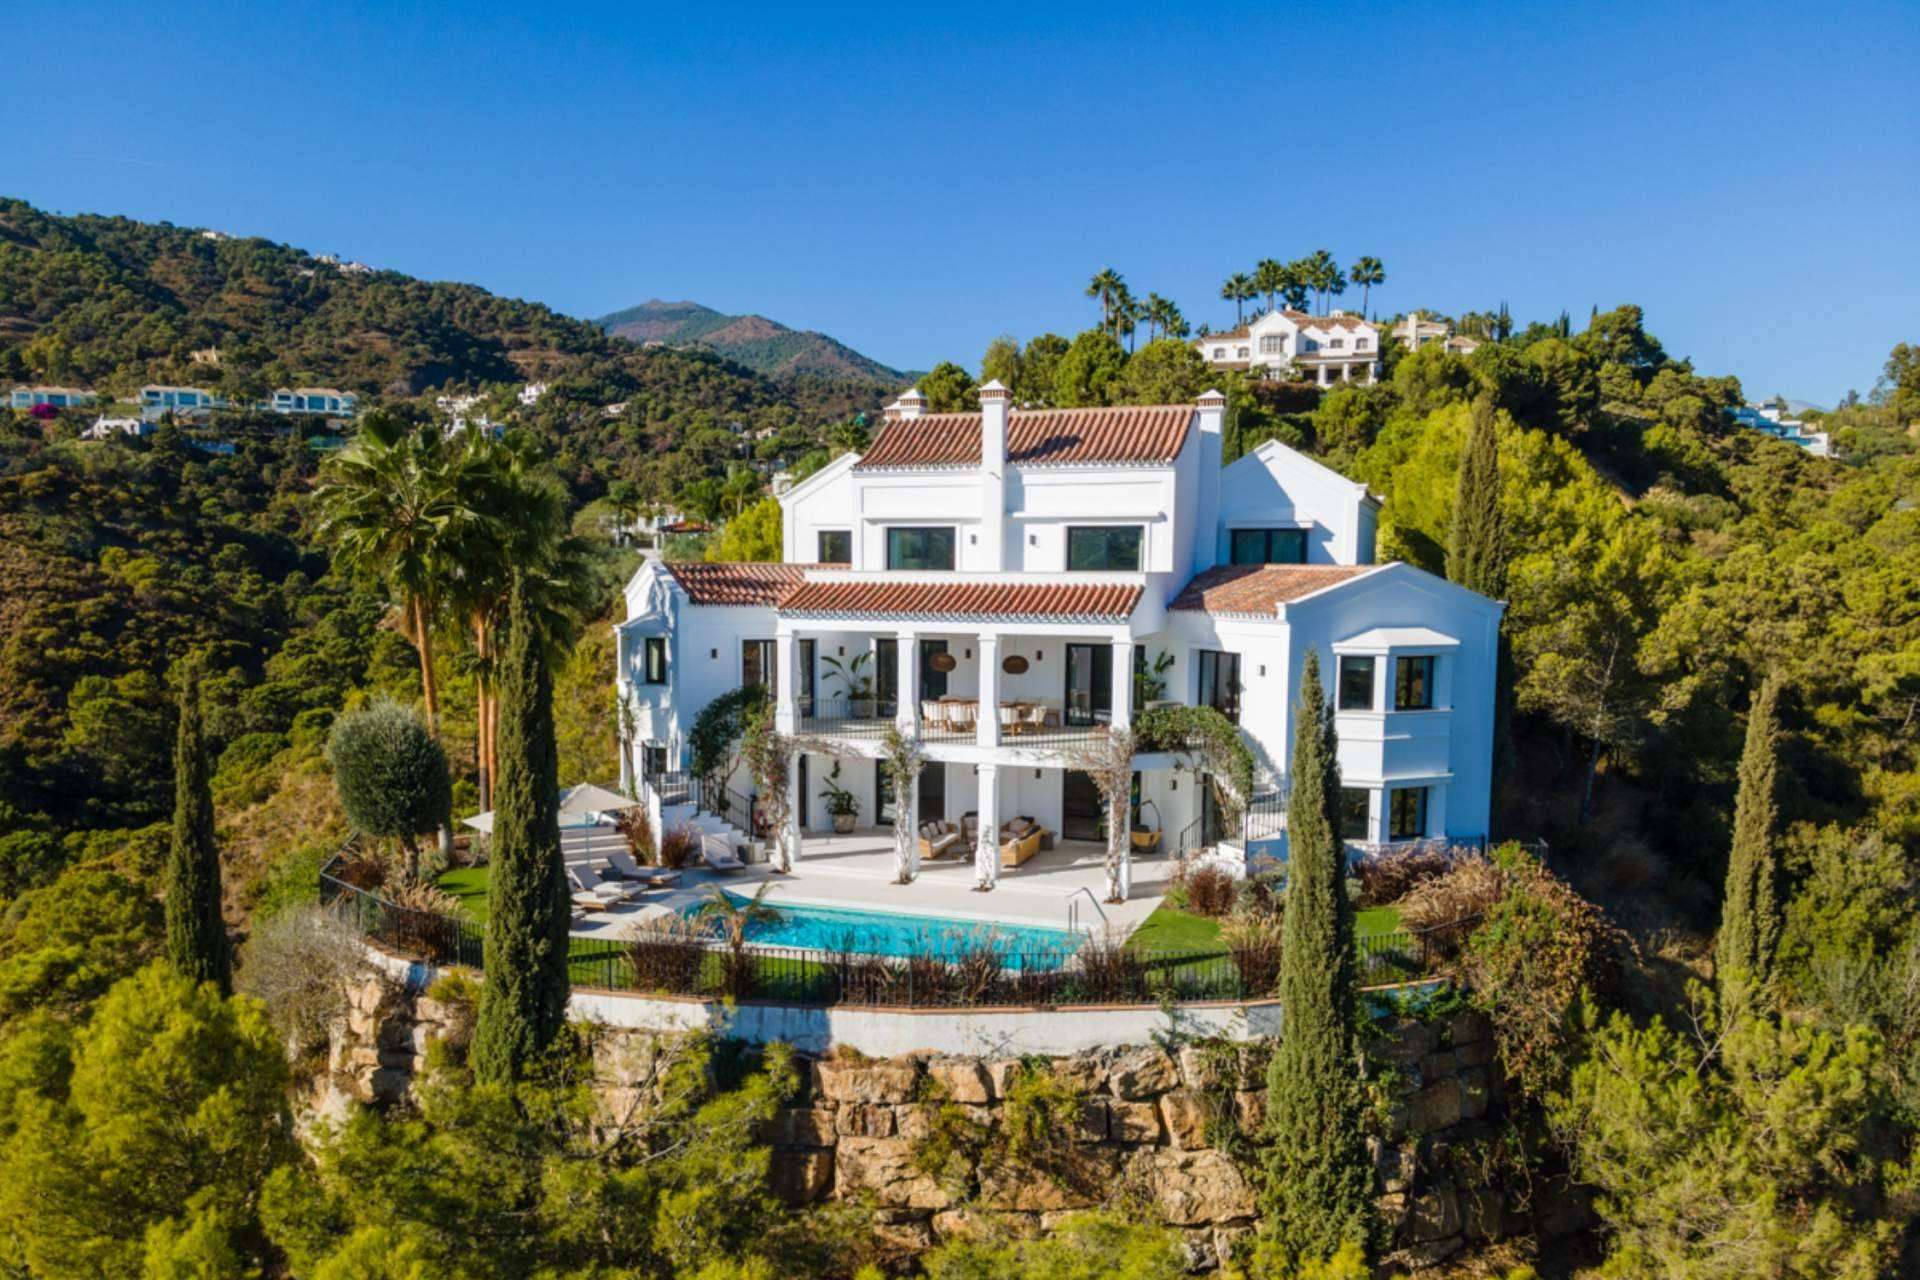 Encontrar la villa de lujo más espectacular de toda Marbella es posible gracias a Zeuthen & Company